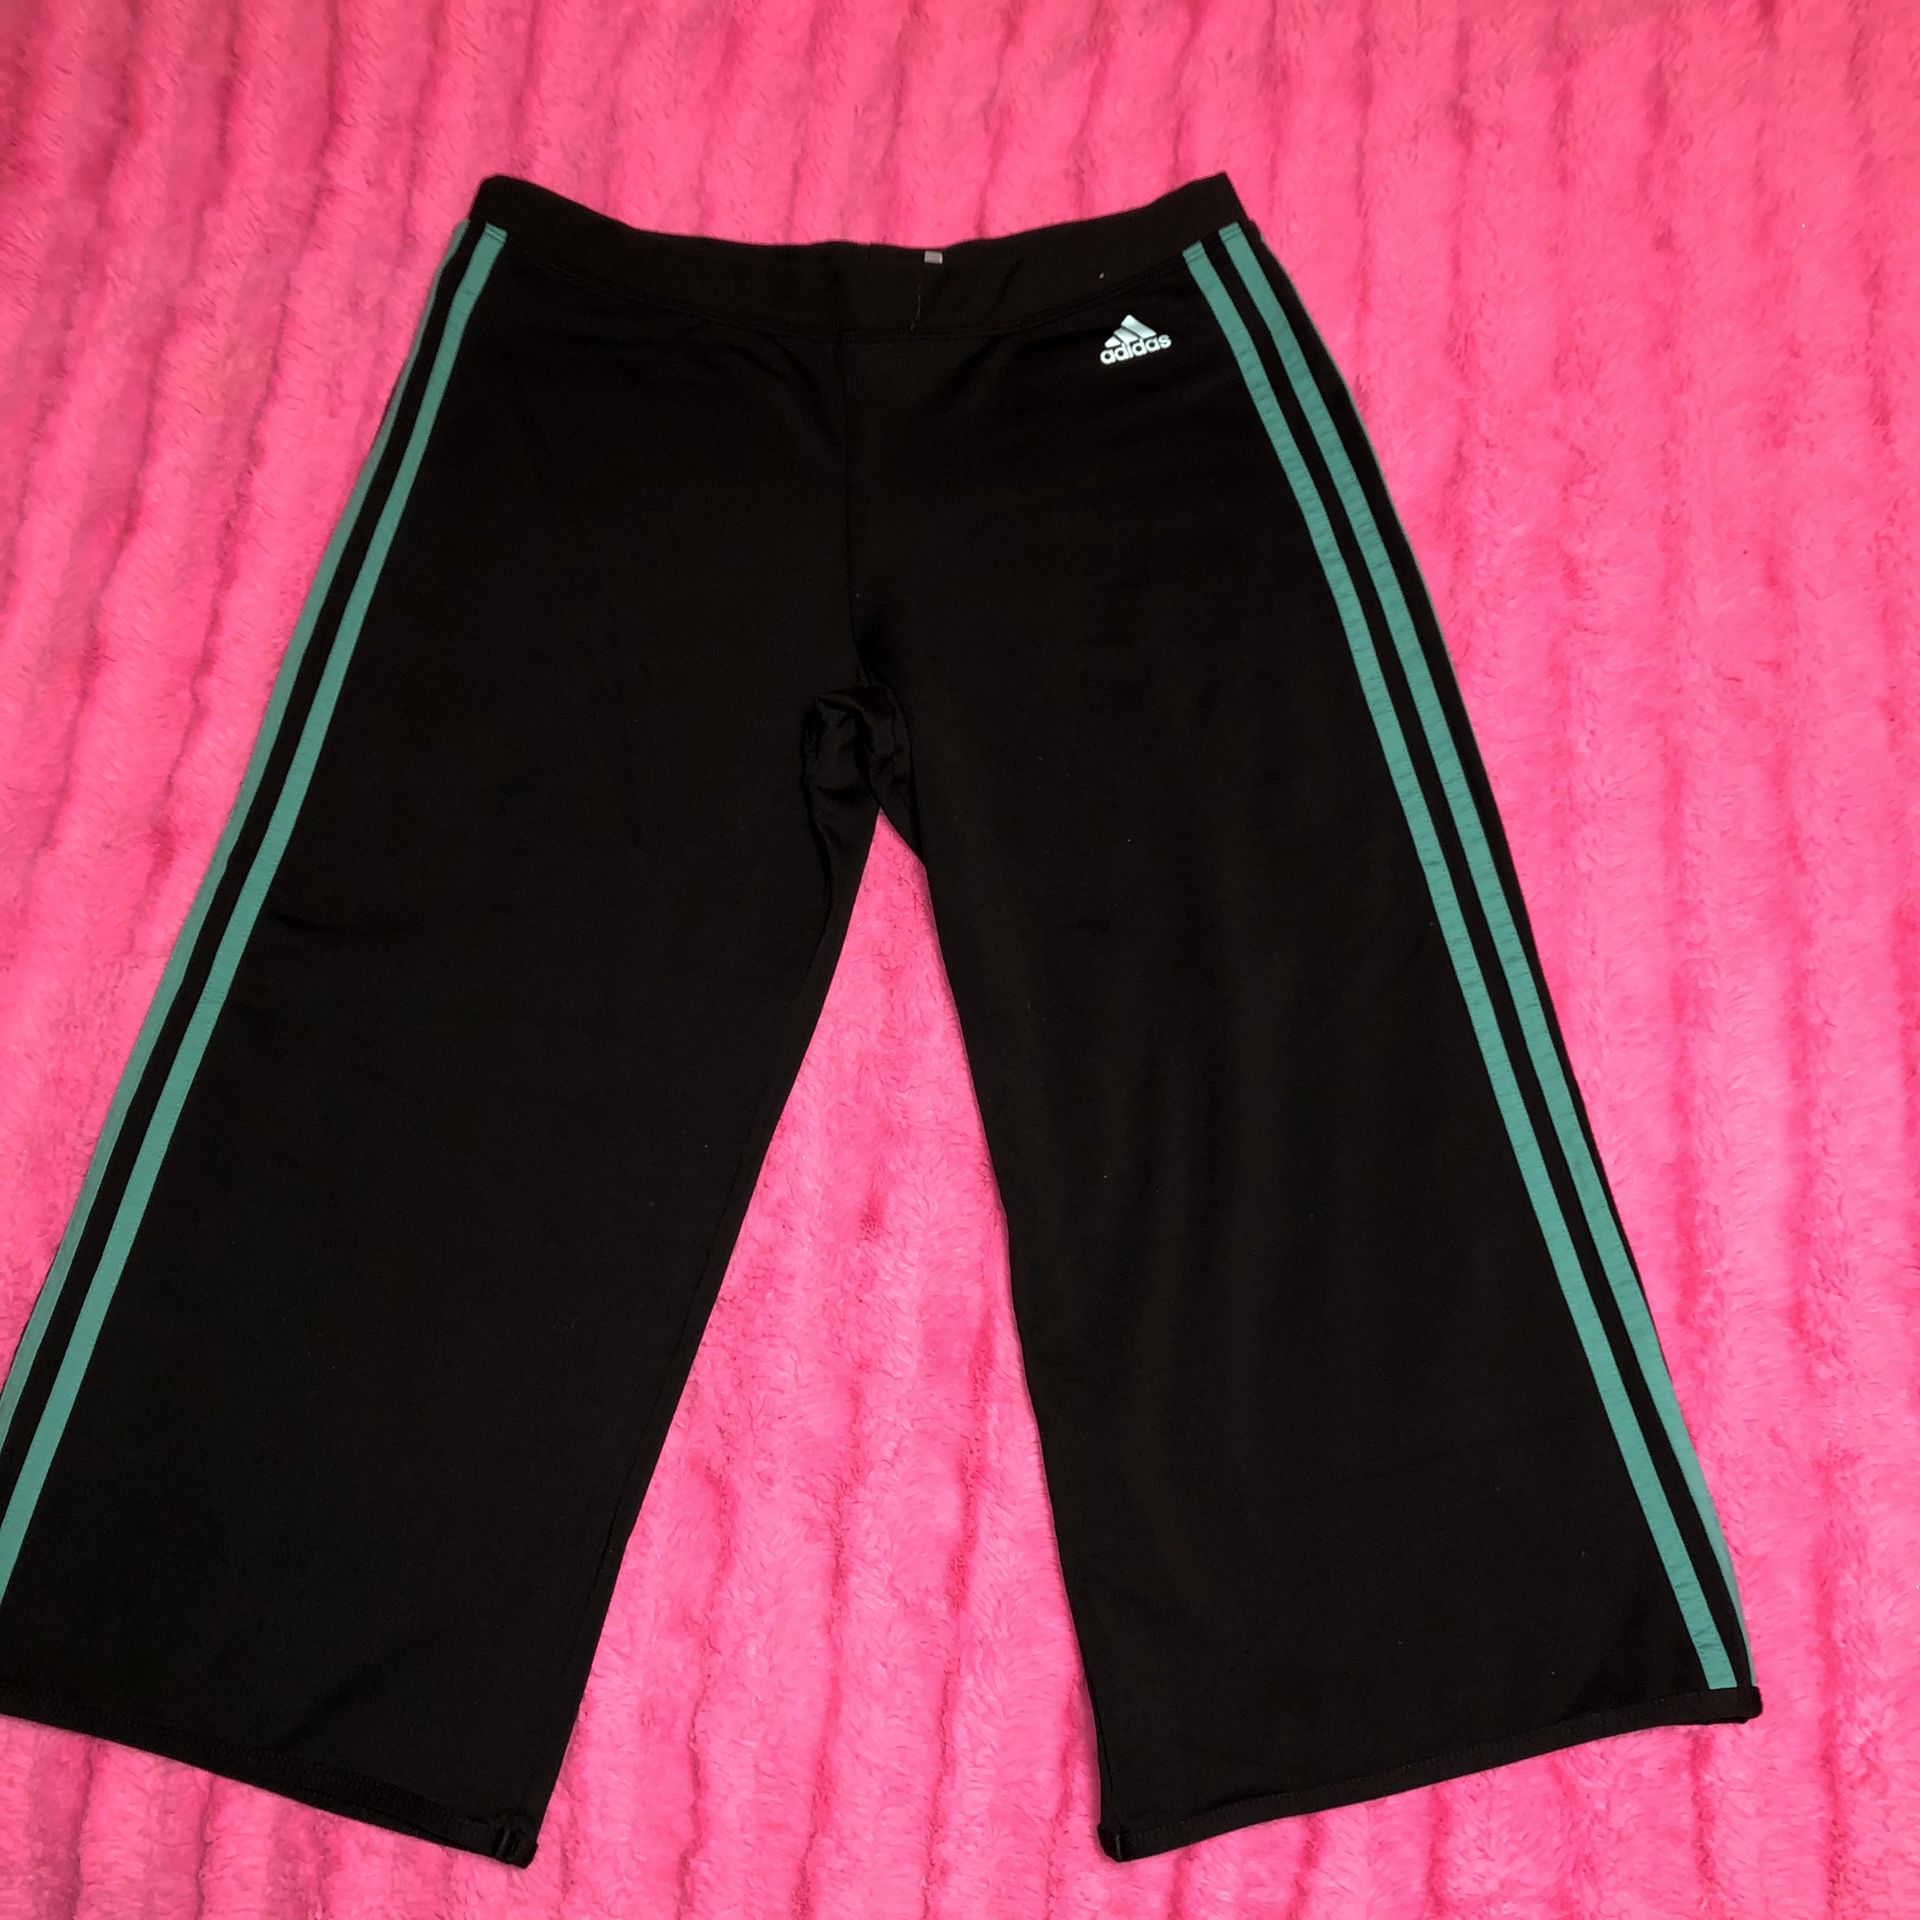 Adidas size large black and greenish turquoise cropped pants